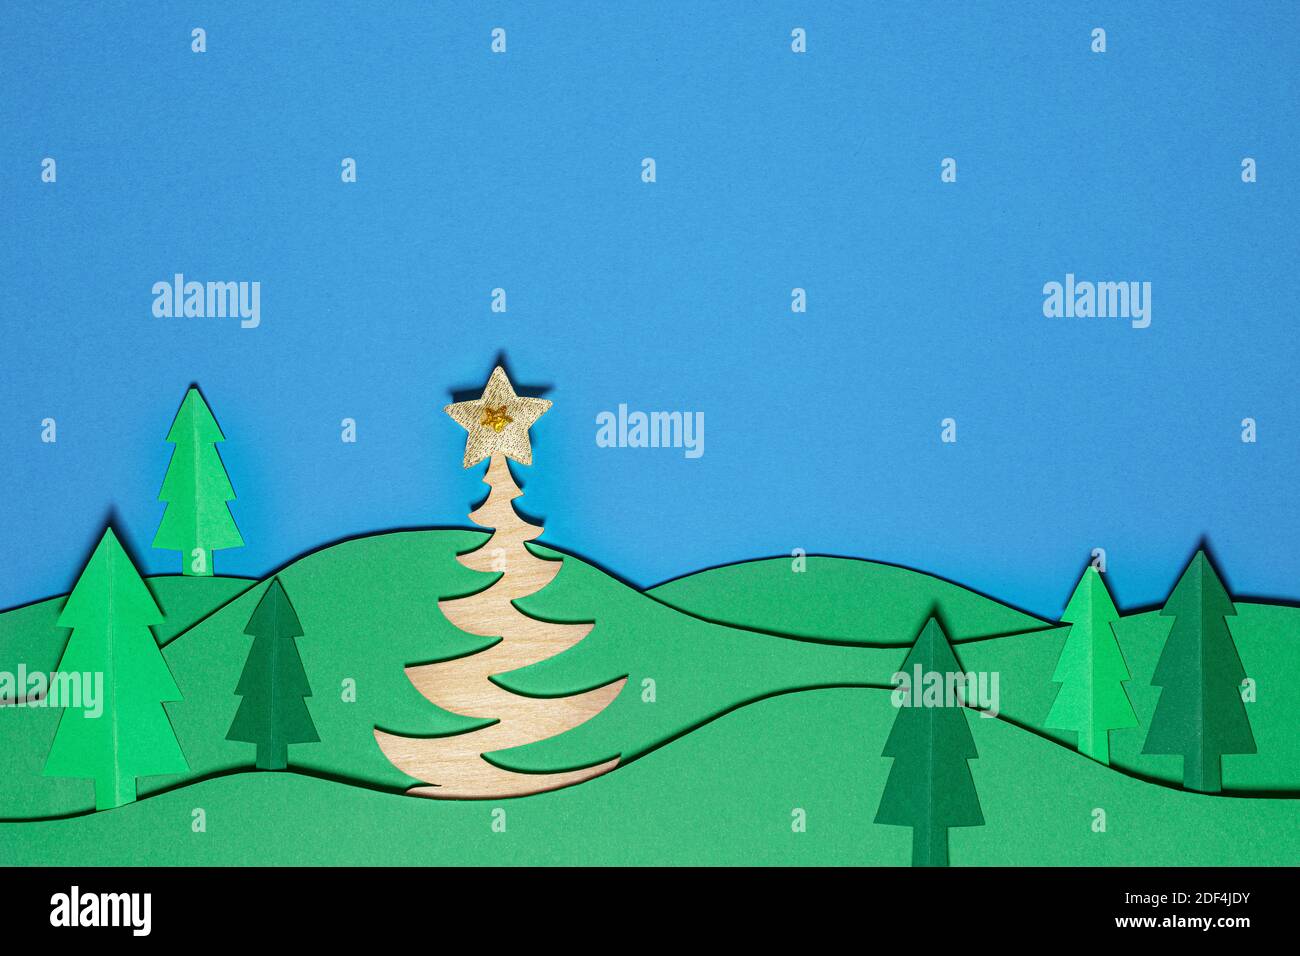 Weihnachtsbaum Papier schneiden Design papercraft Karte. Papiergeschnittene Weihnachtsbäume. Kreative Gestaltung von weihnachten Hintergrund mit Papier Tanne Baum. Die Kunst p Stockfoto